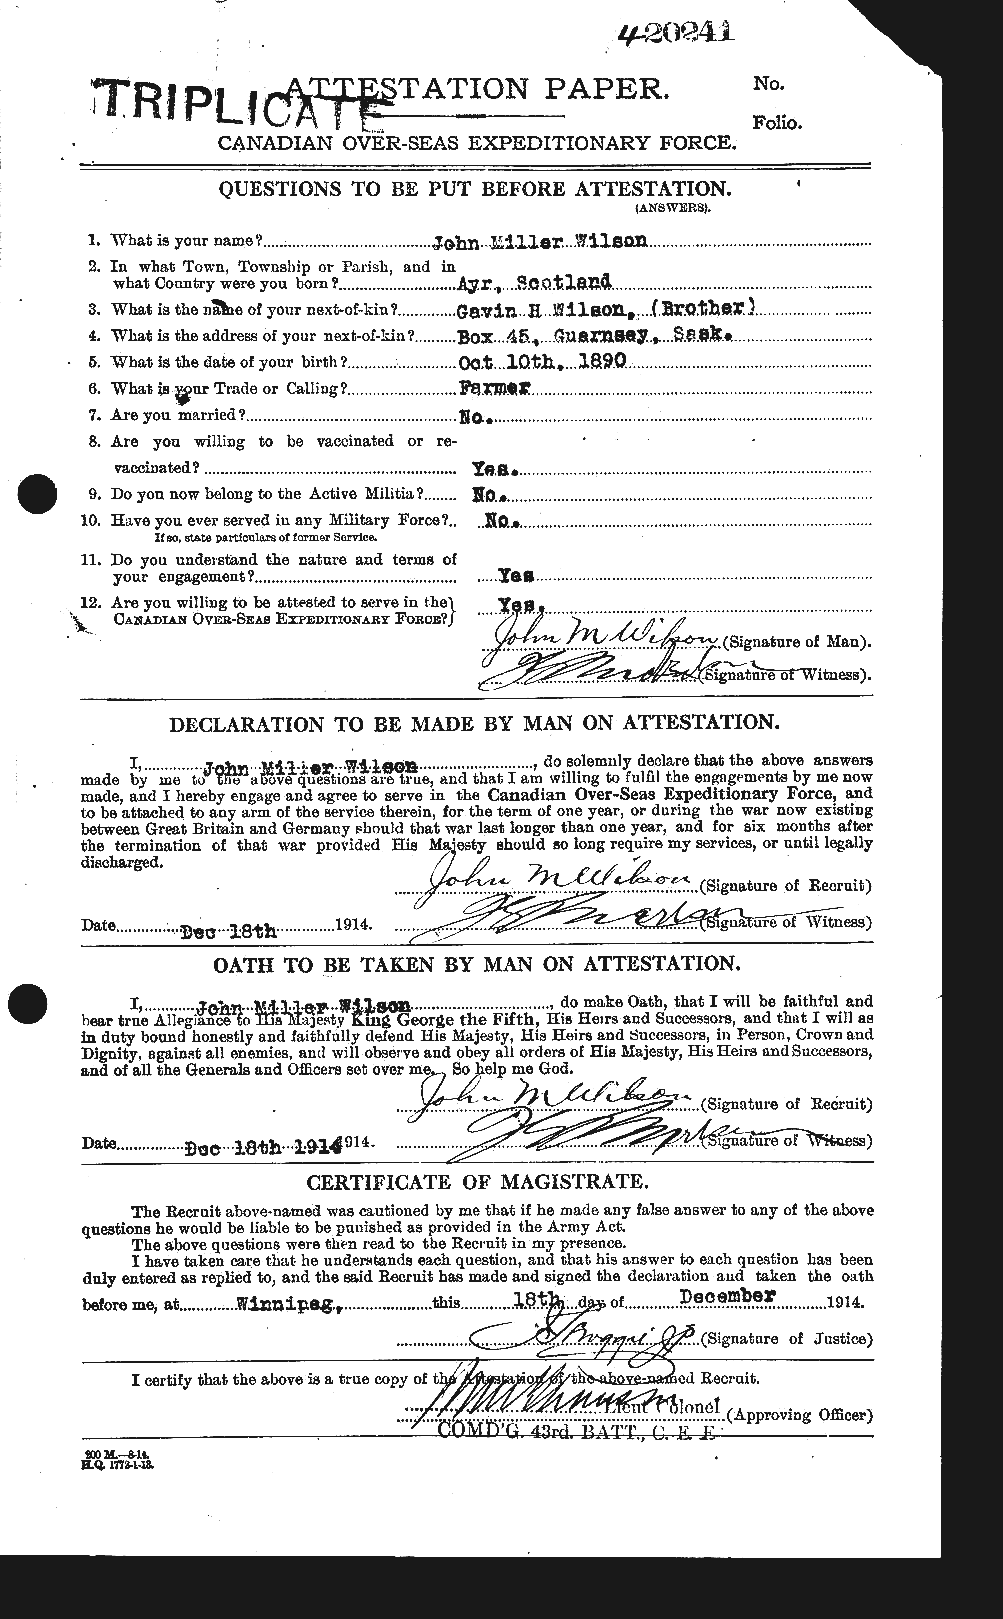 Dossiers du Personnel de la Première Guerre mondiale - CEC 683361a